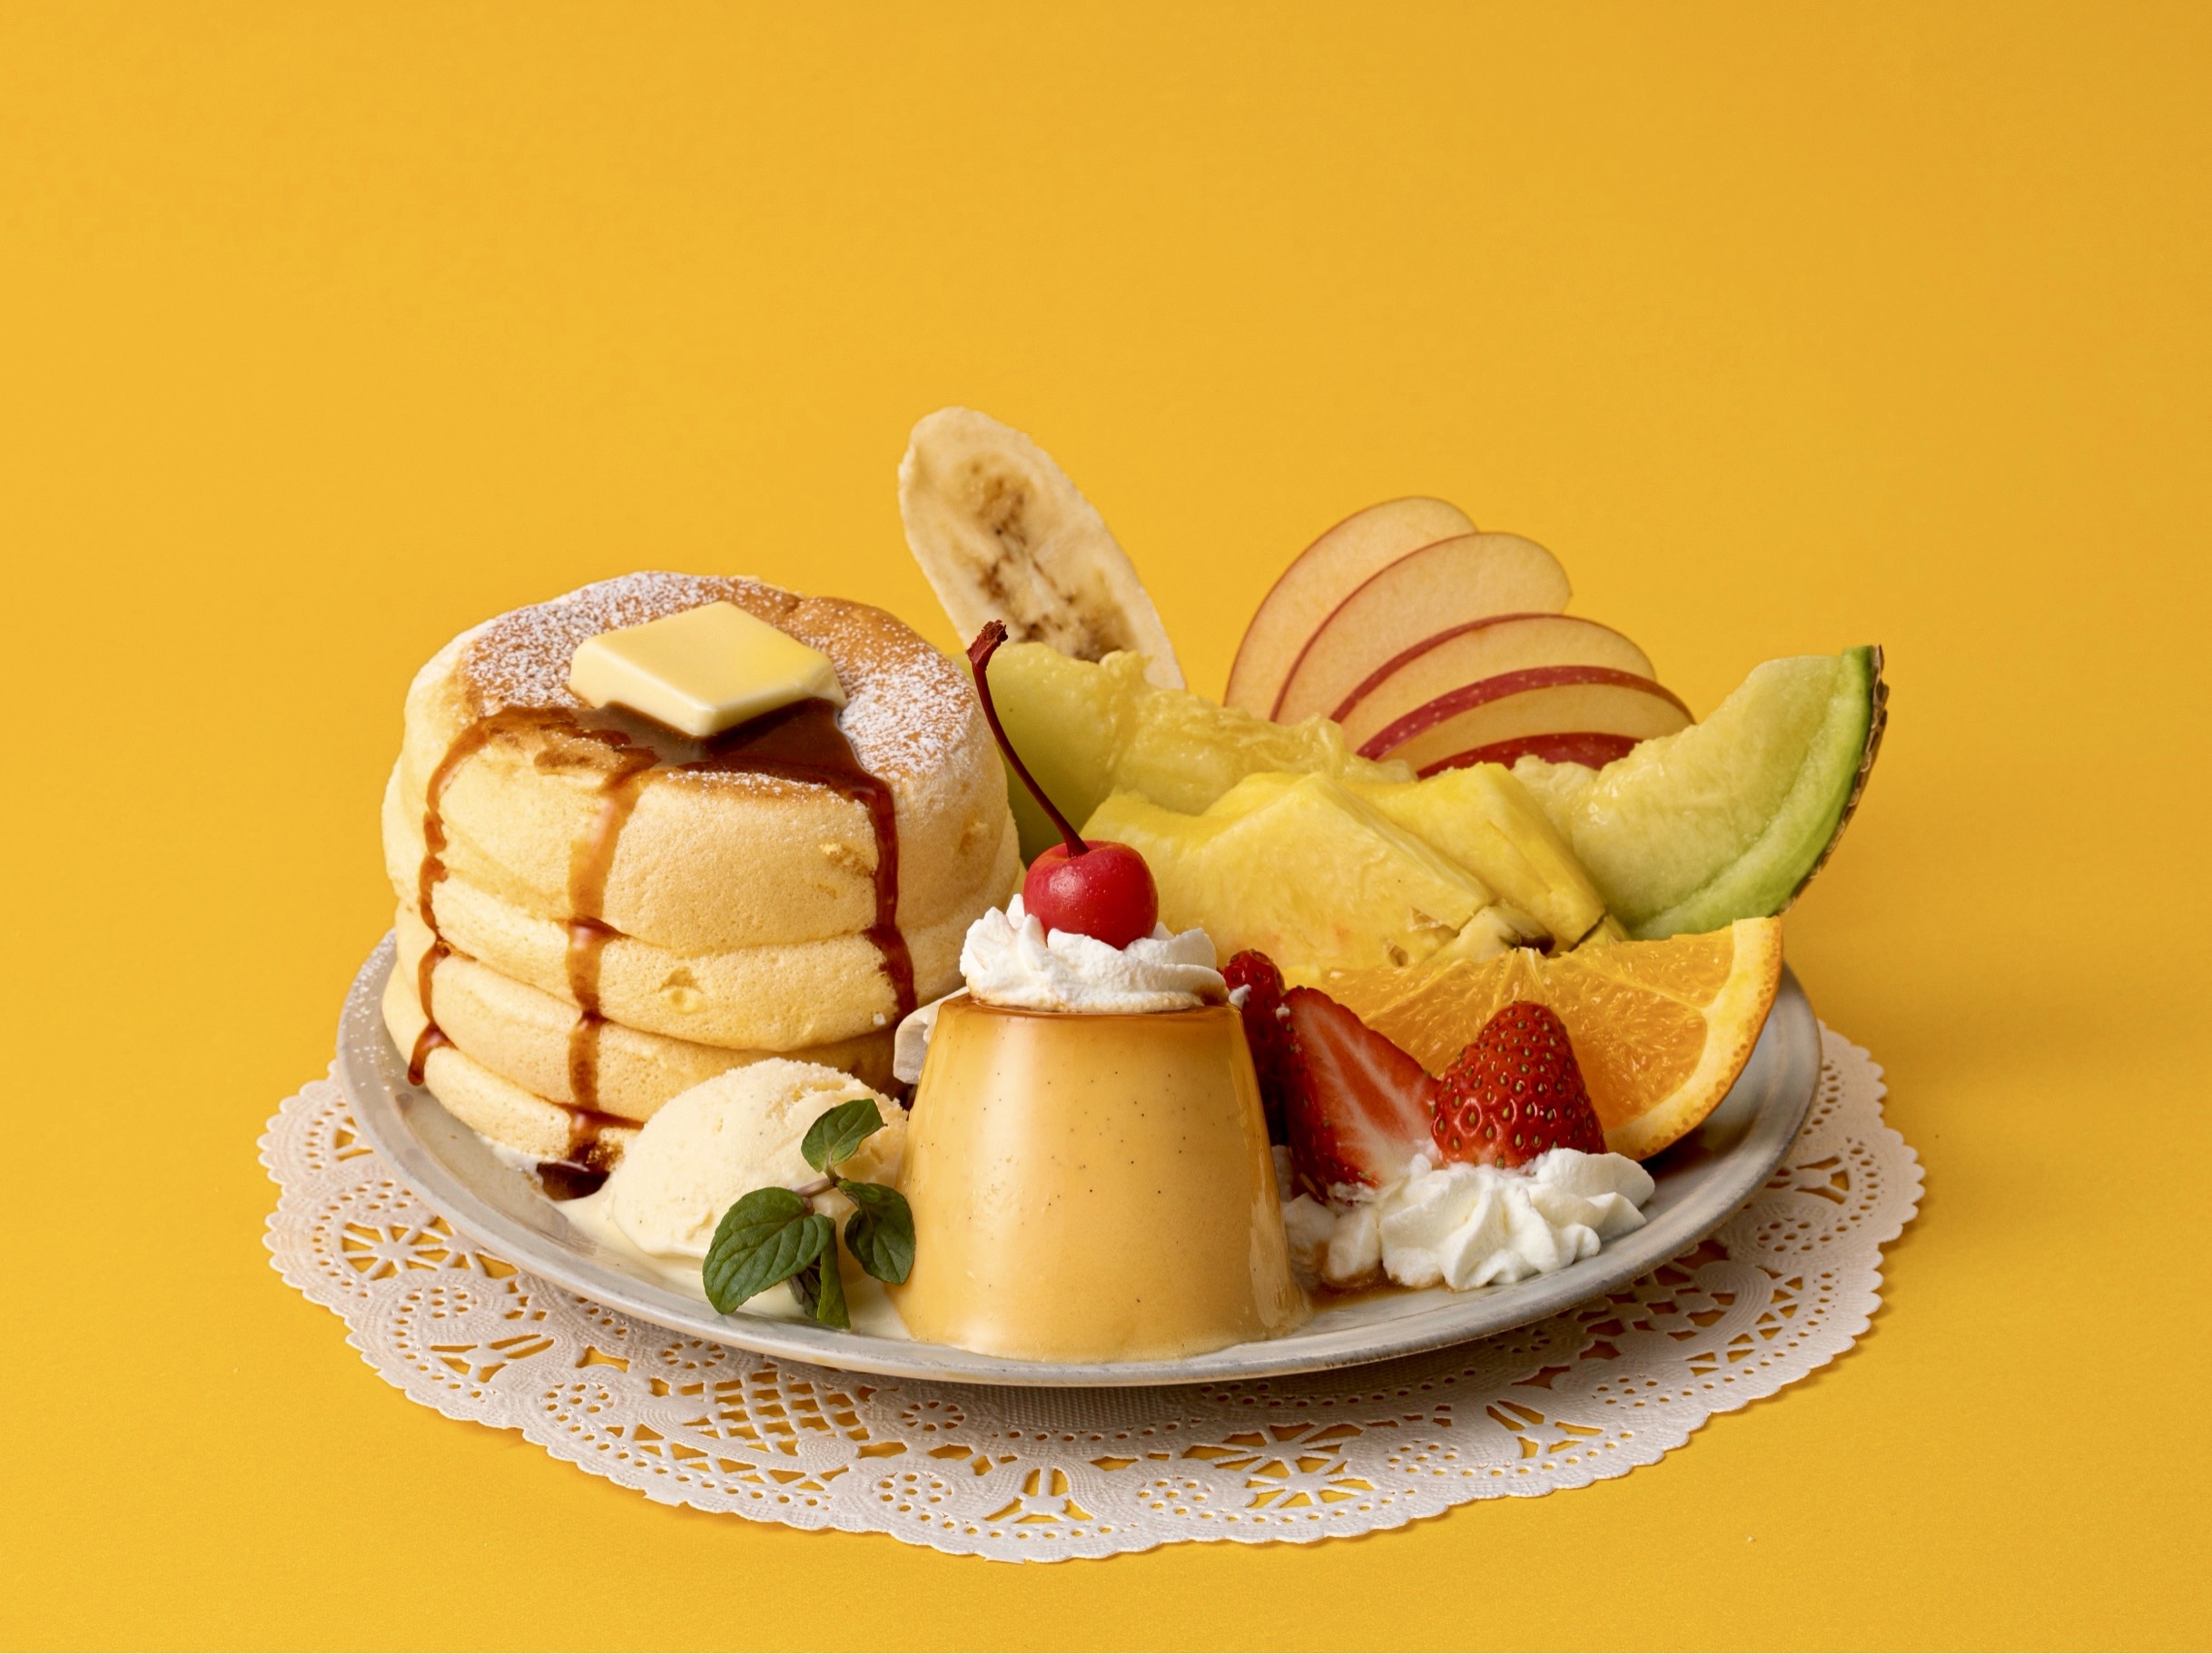 ぷるぷる自家製プリンと7種のフレッシュフルーツ盛り合わせた 奇跡のパンケーキ プリンアラモード を年1月限定発売 株式会社ベイクルーズのプレスリリース